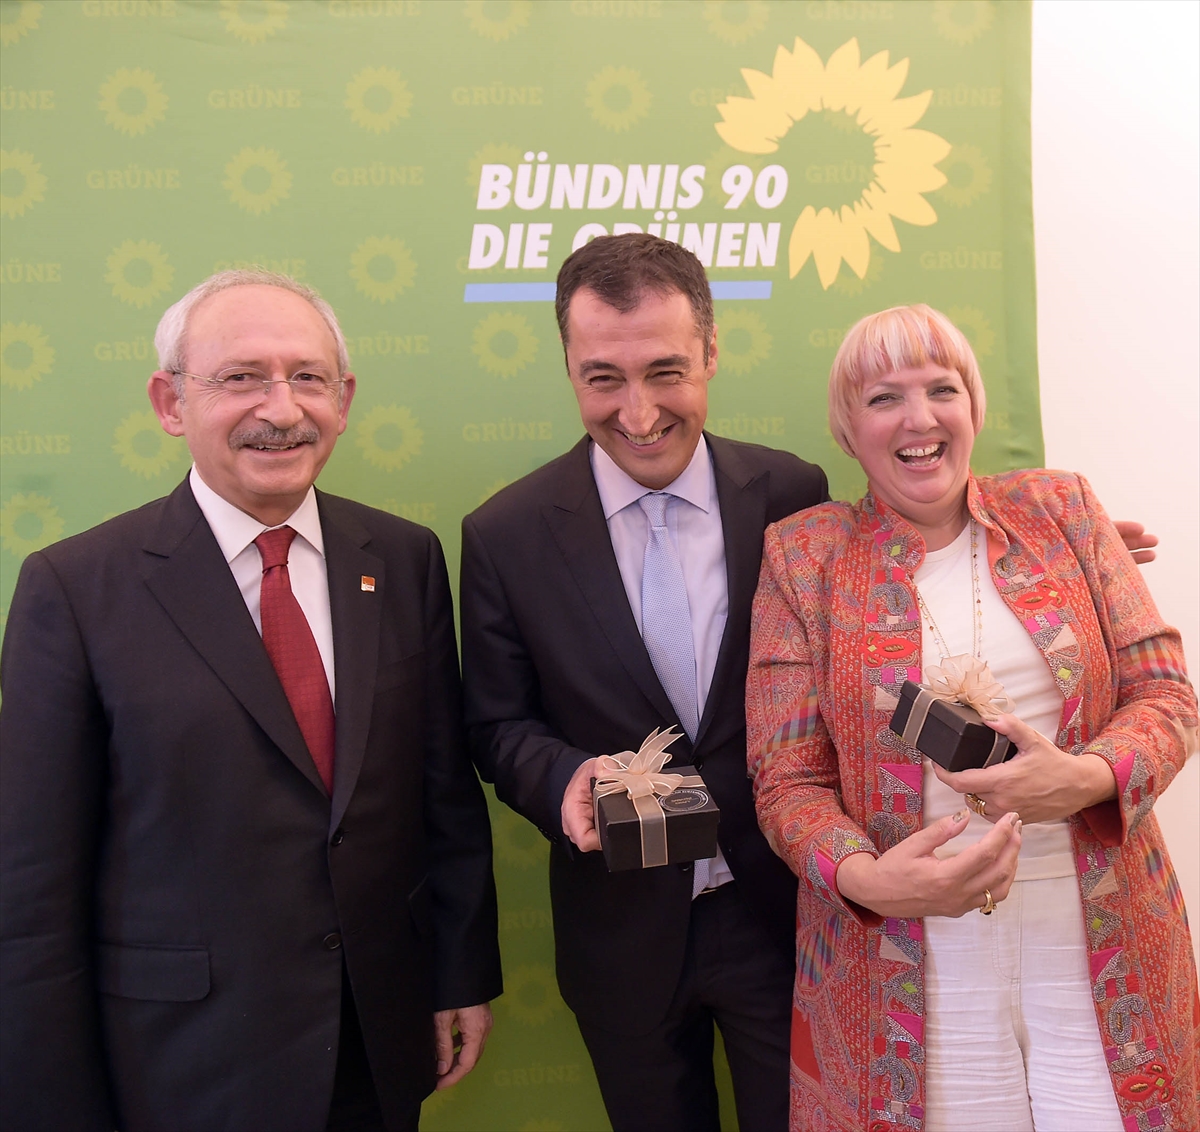 Kılıçdaroğlu Alman siyasetçilerle buluştu